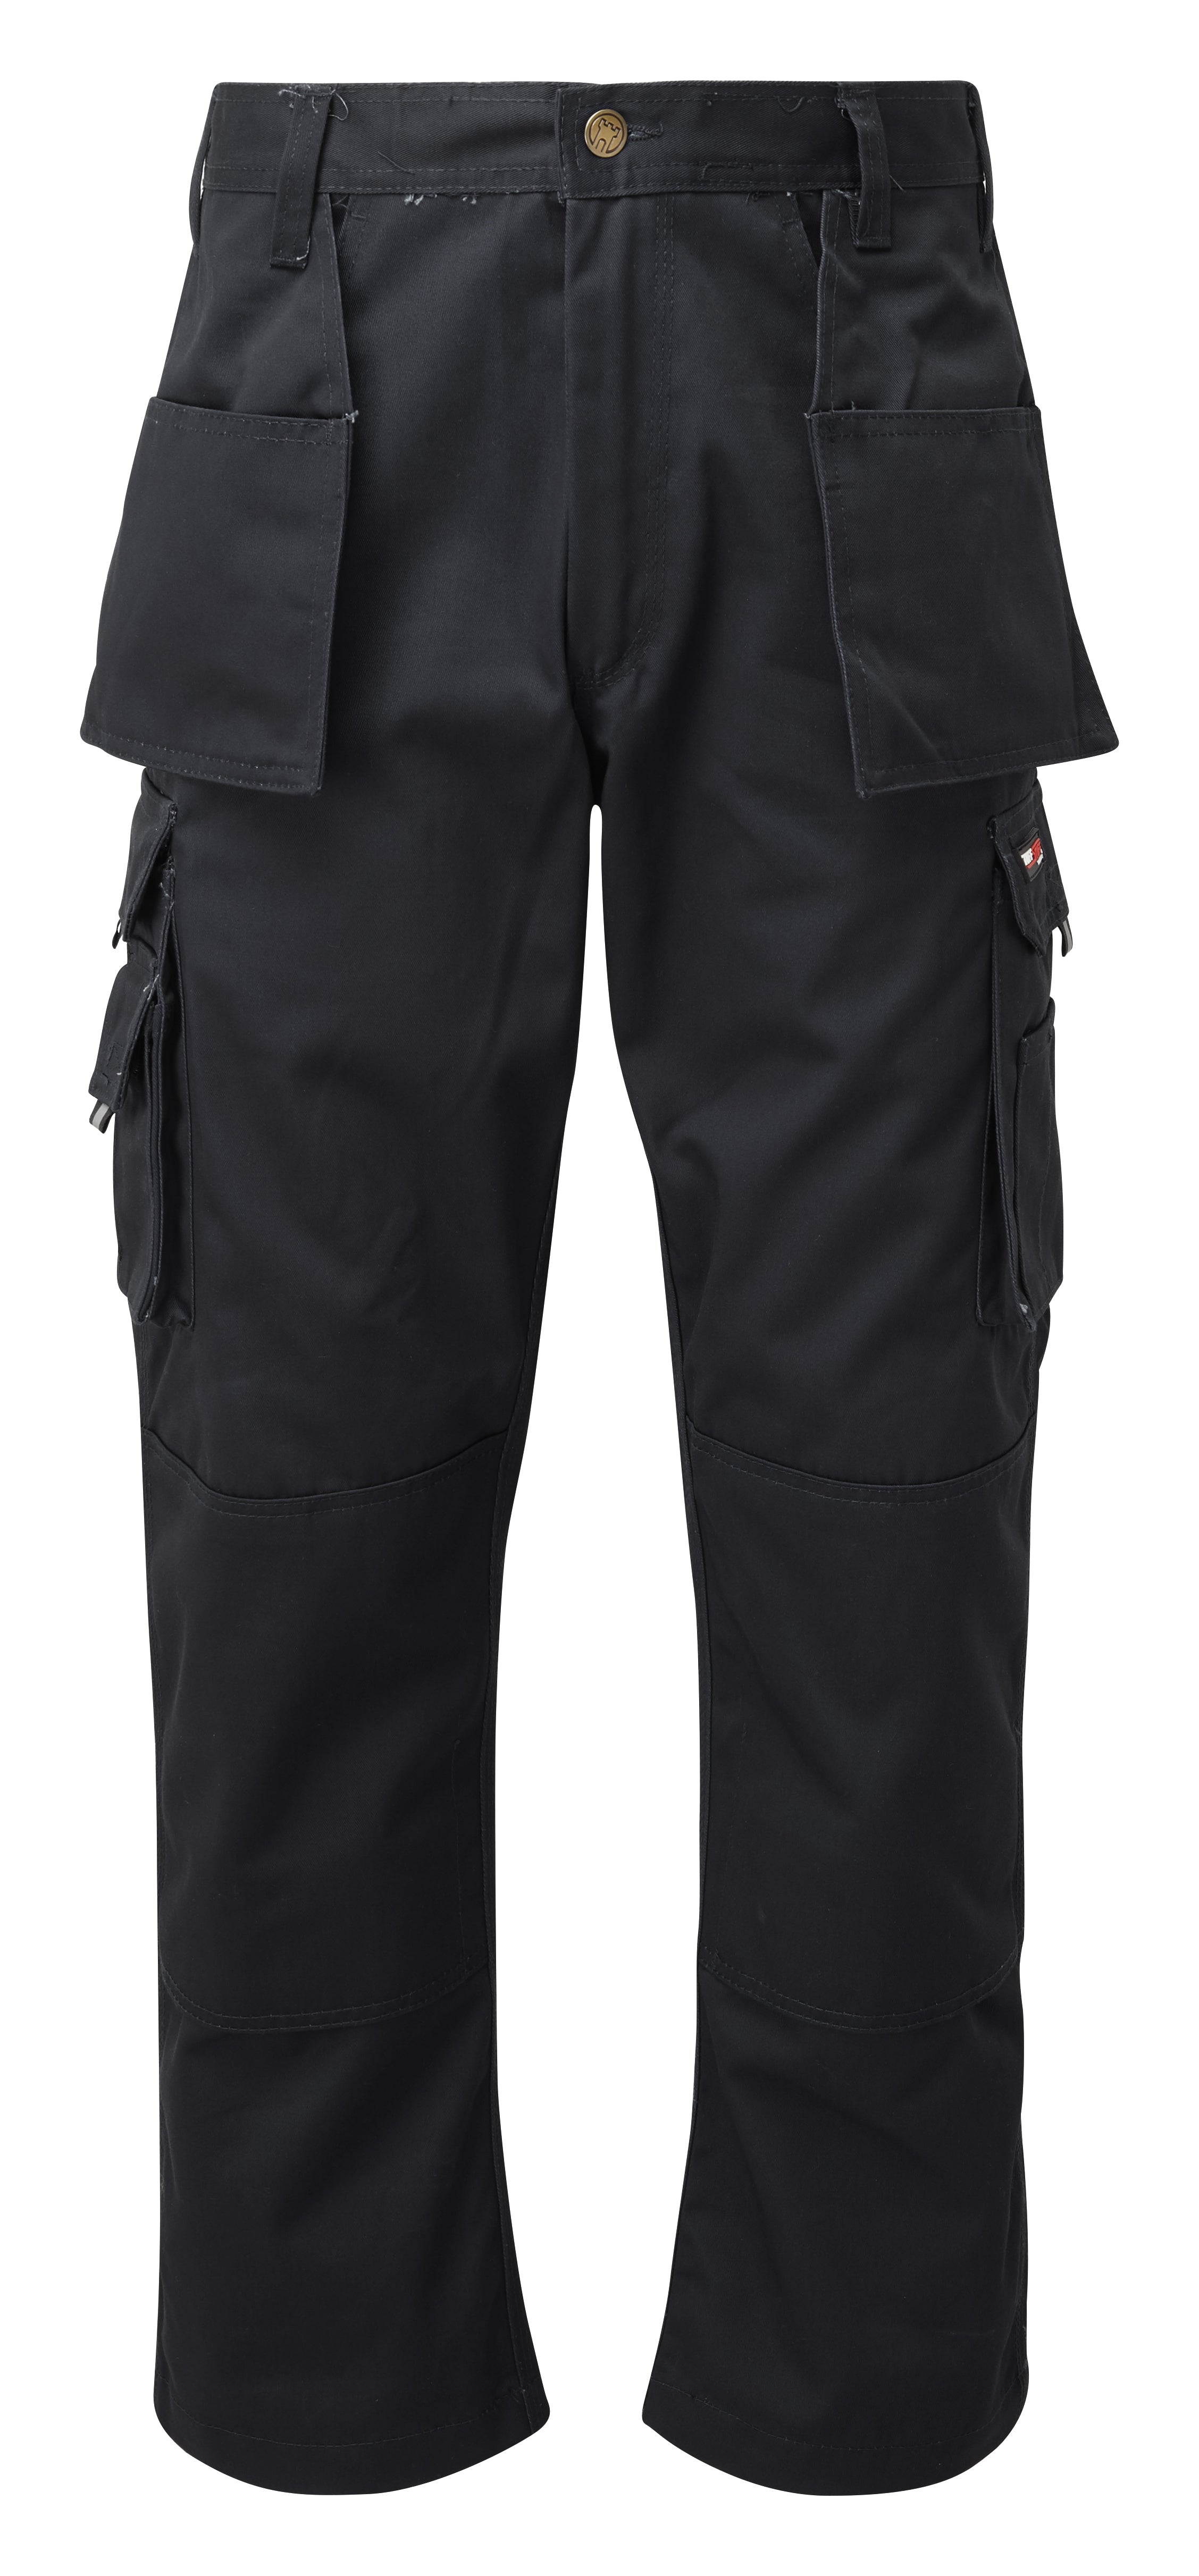 Pro Workwear Cargo Trousers